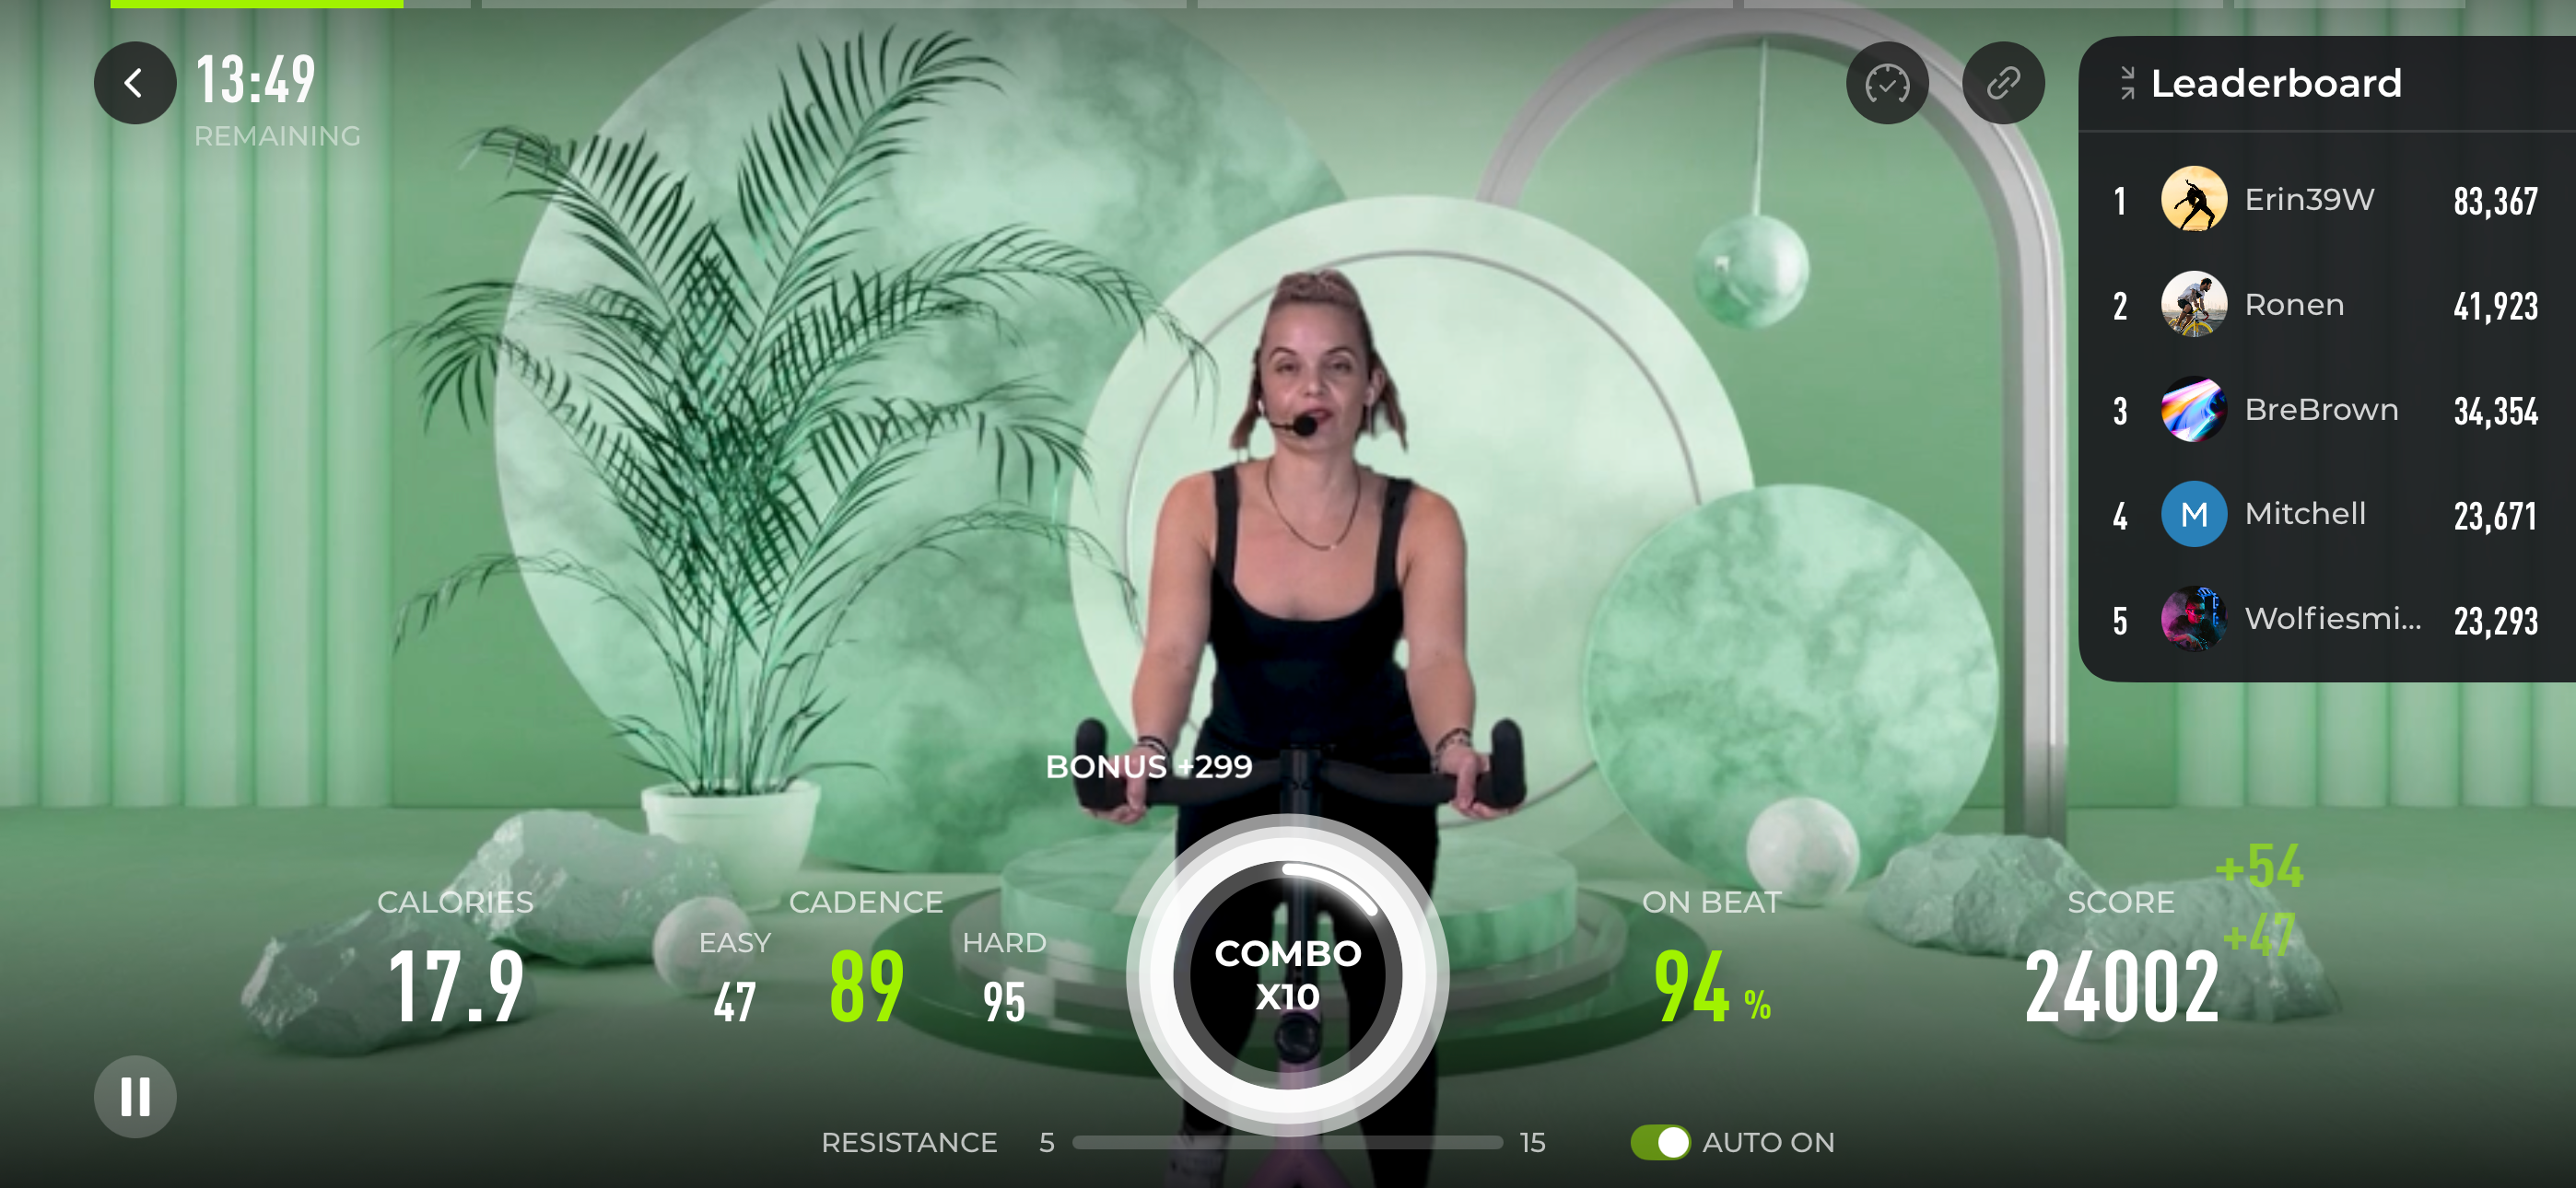 workout screenshot from freebeat app